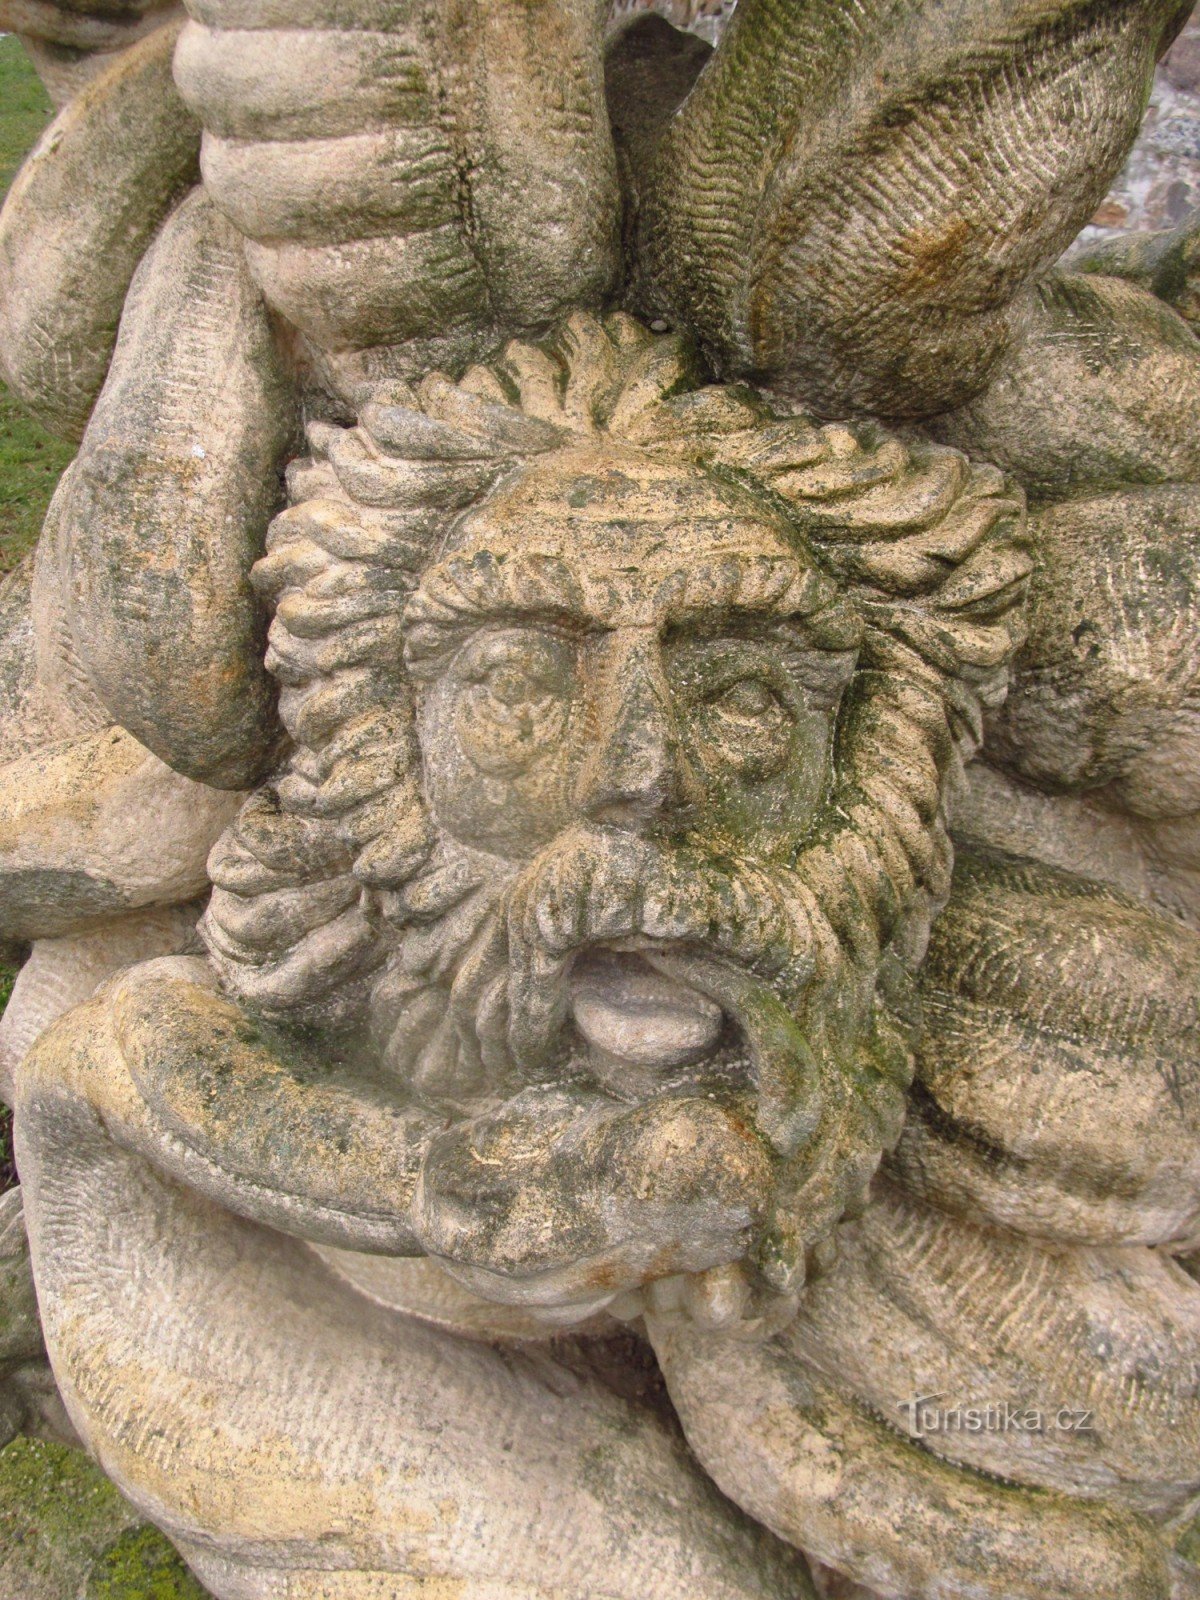 Змей плена - скульптура Герберта Киши в Кадани